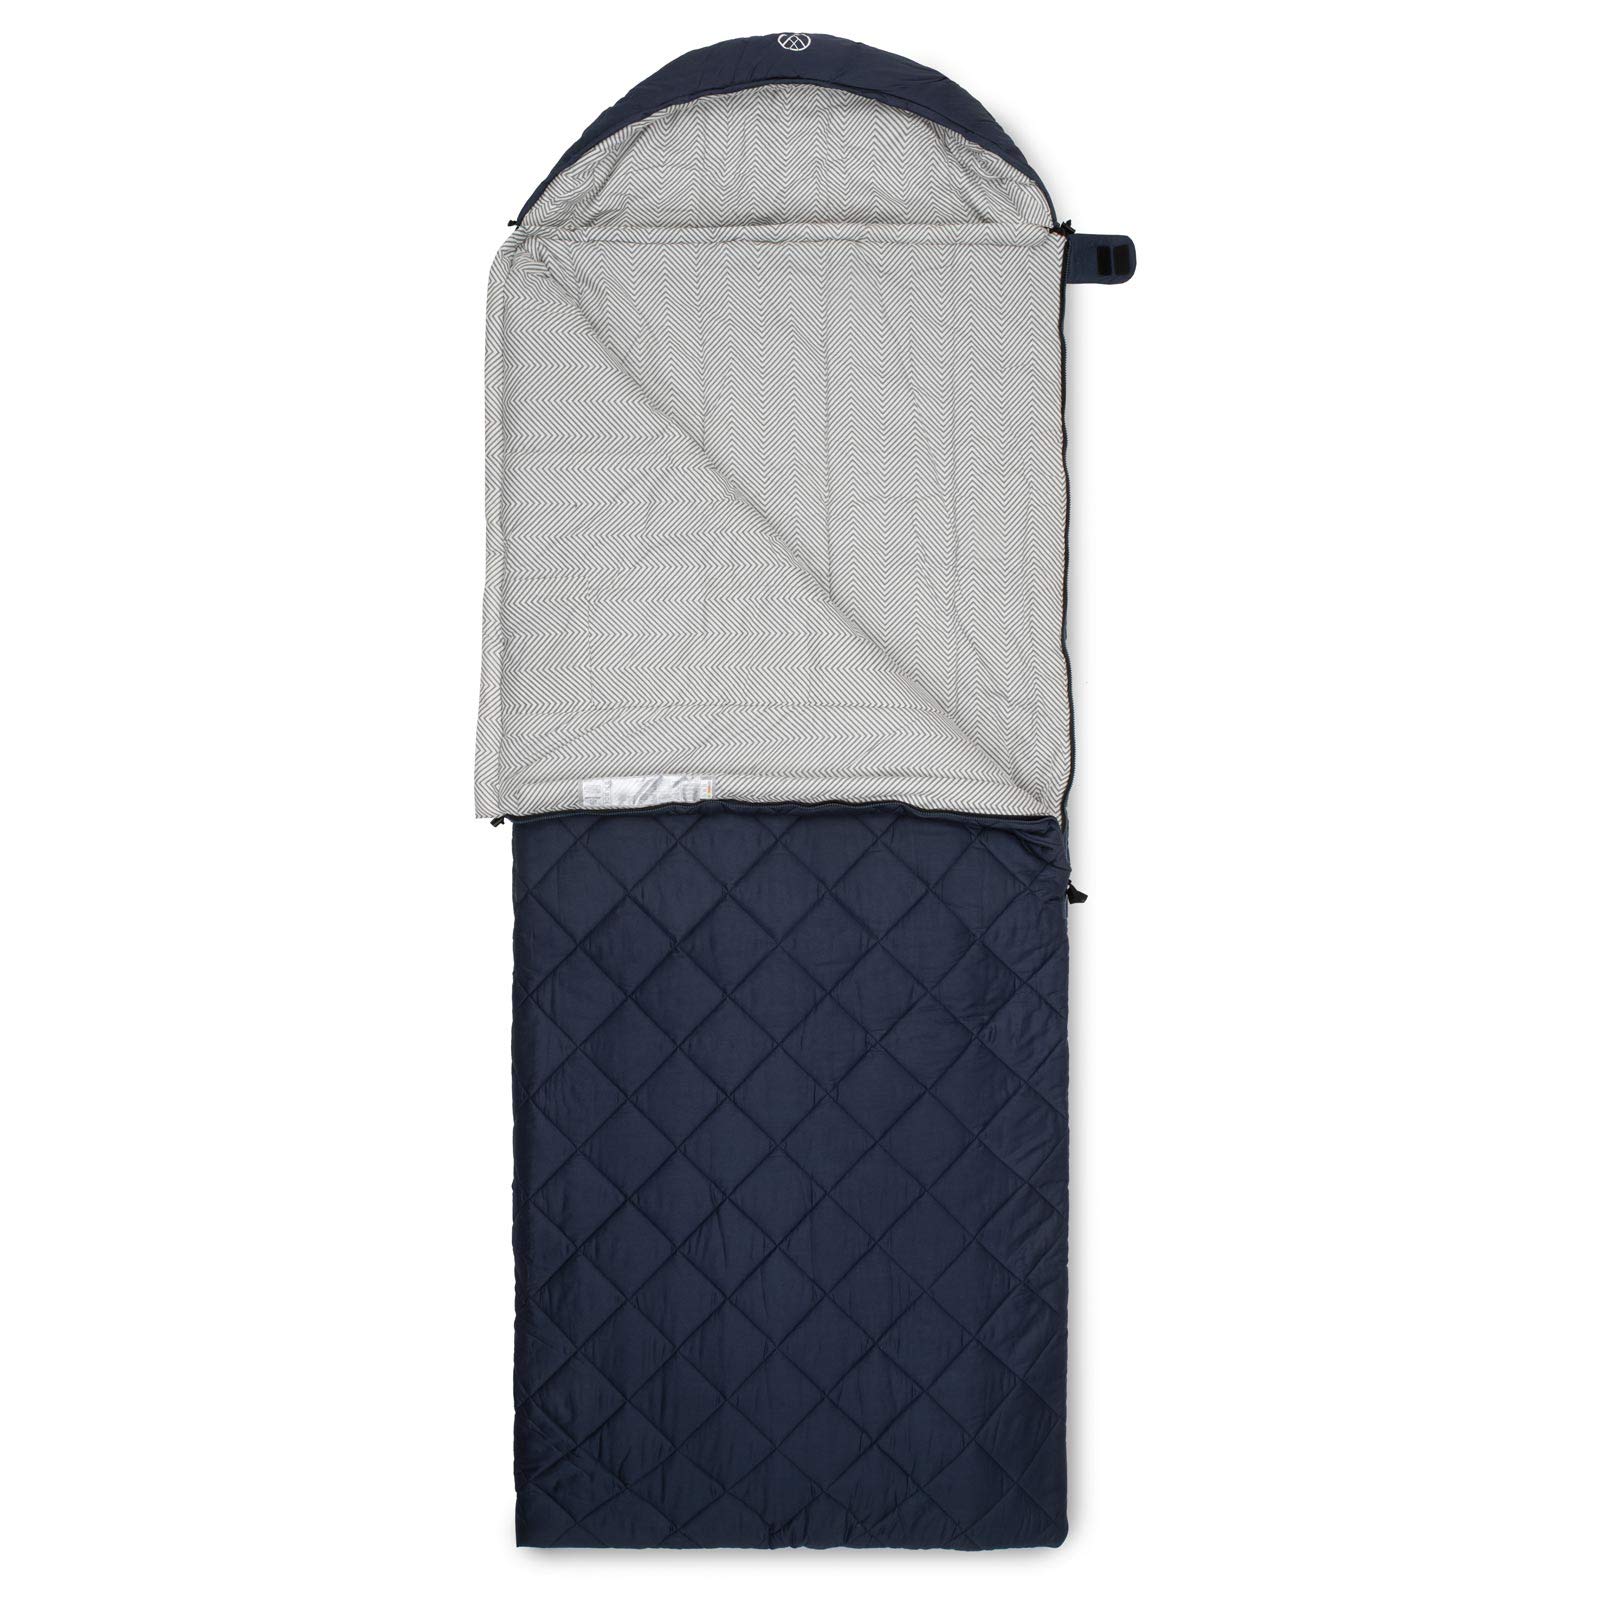 Justcamp Urbana Deckenschlafsack (220 x 85 cm) mit Innen- & Außenbezug aus Baumwolle - Koppelbarer Camping Reiseschlafsack für 3 Jahreszeiten, extra groß & breit für Erwachsene, mit kleinem Packmaß